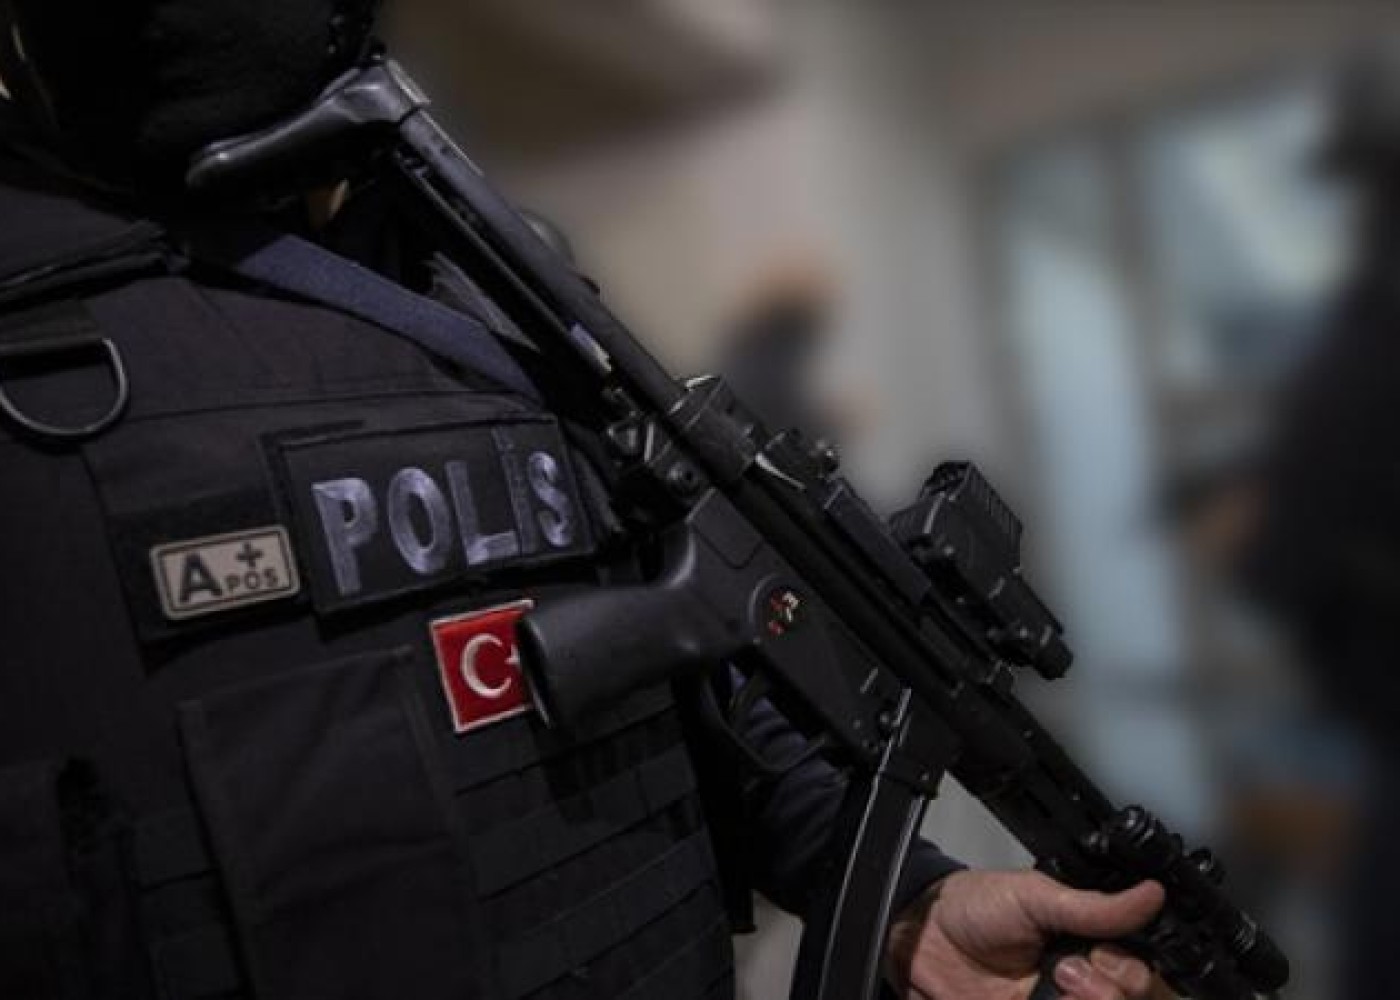 Türkiyədə terrorçulara qarşı əməliyyat - 110 şübhəli saxlanılıb